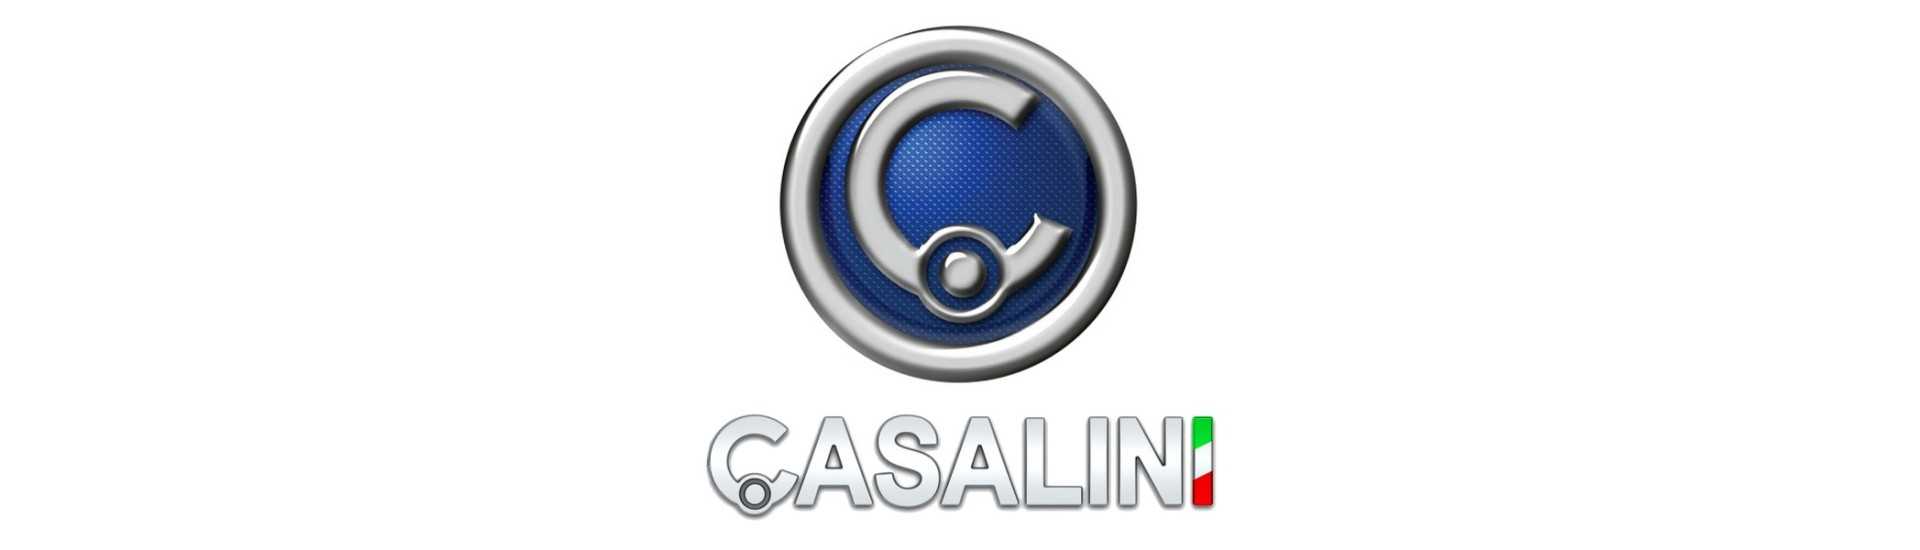 Fabricador eléctrico al mejor precio para coche sin permiso Casalini